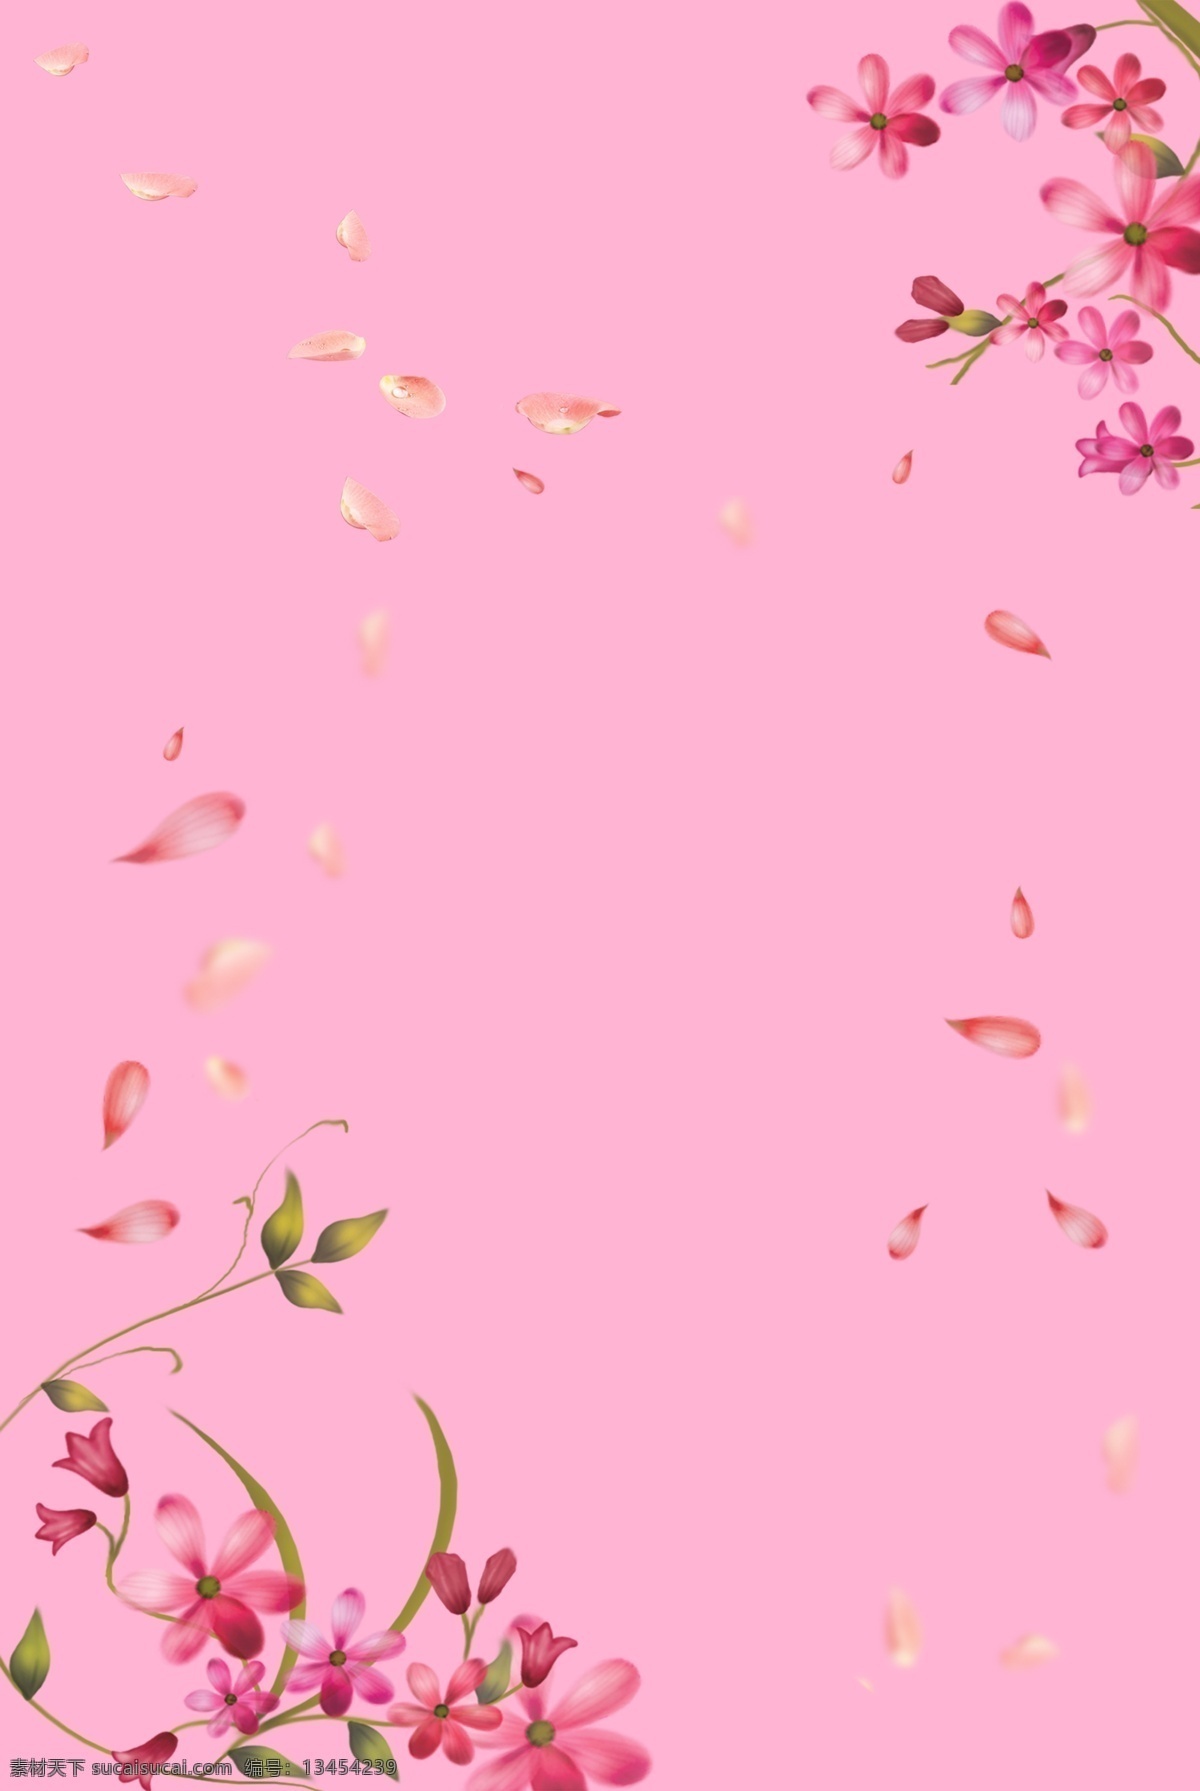 小 清新 母亲节 花瓣 边框 广告 背景 小清新 粉色 组合 简约 文艺